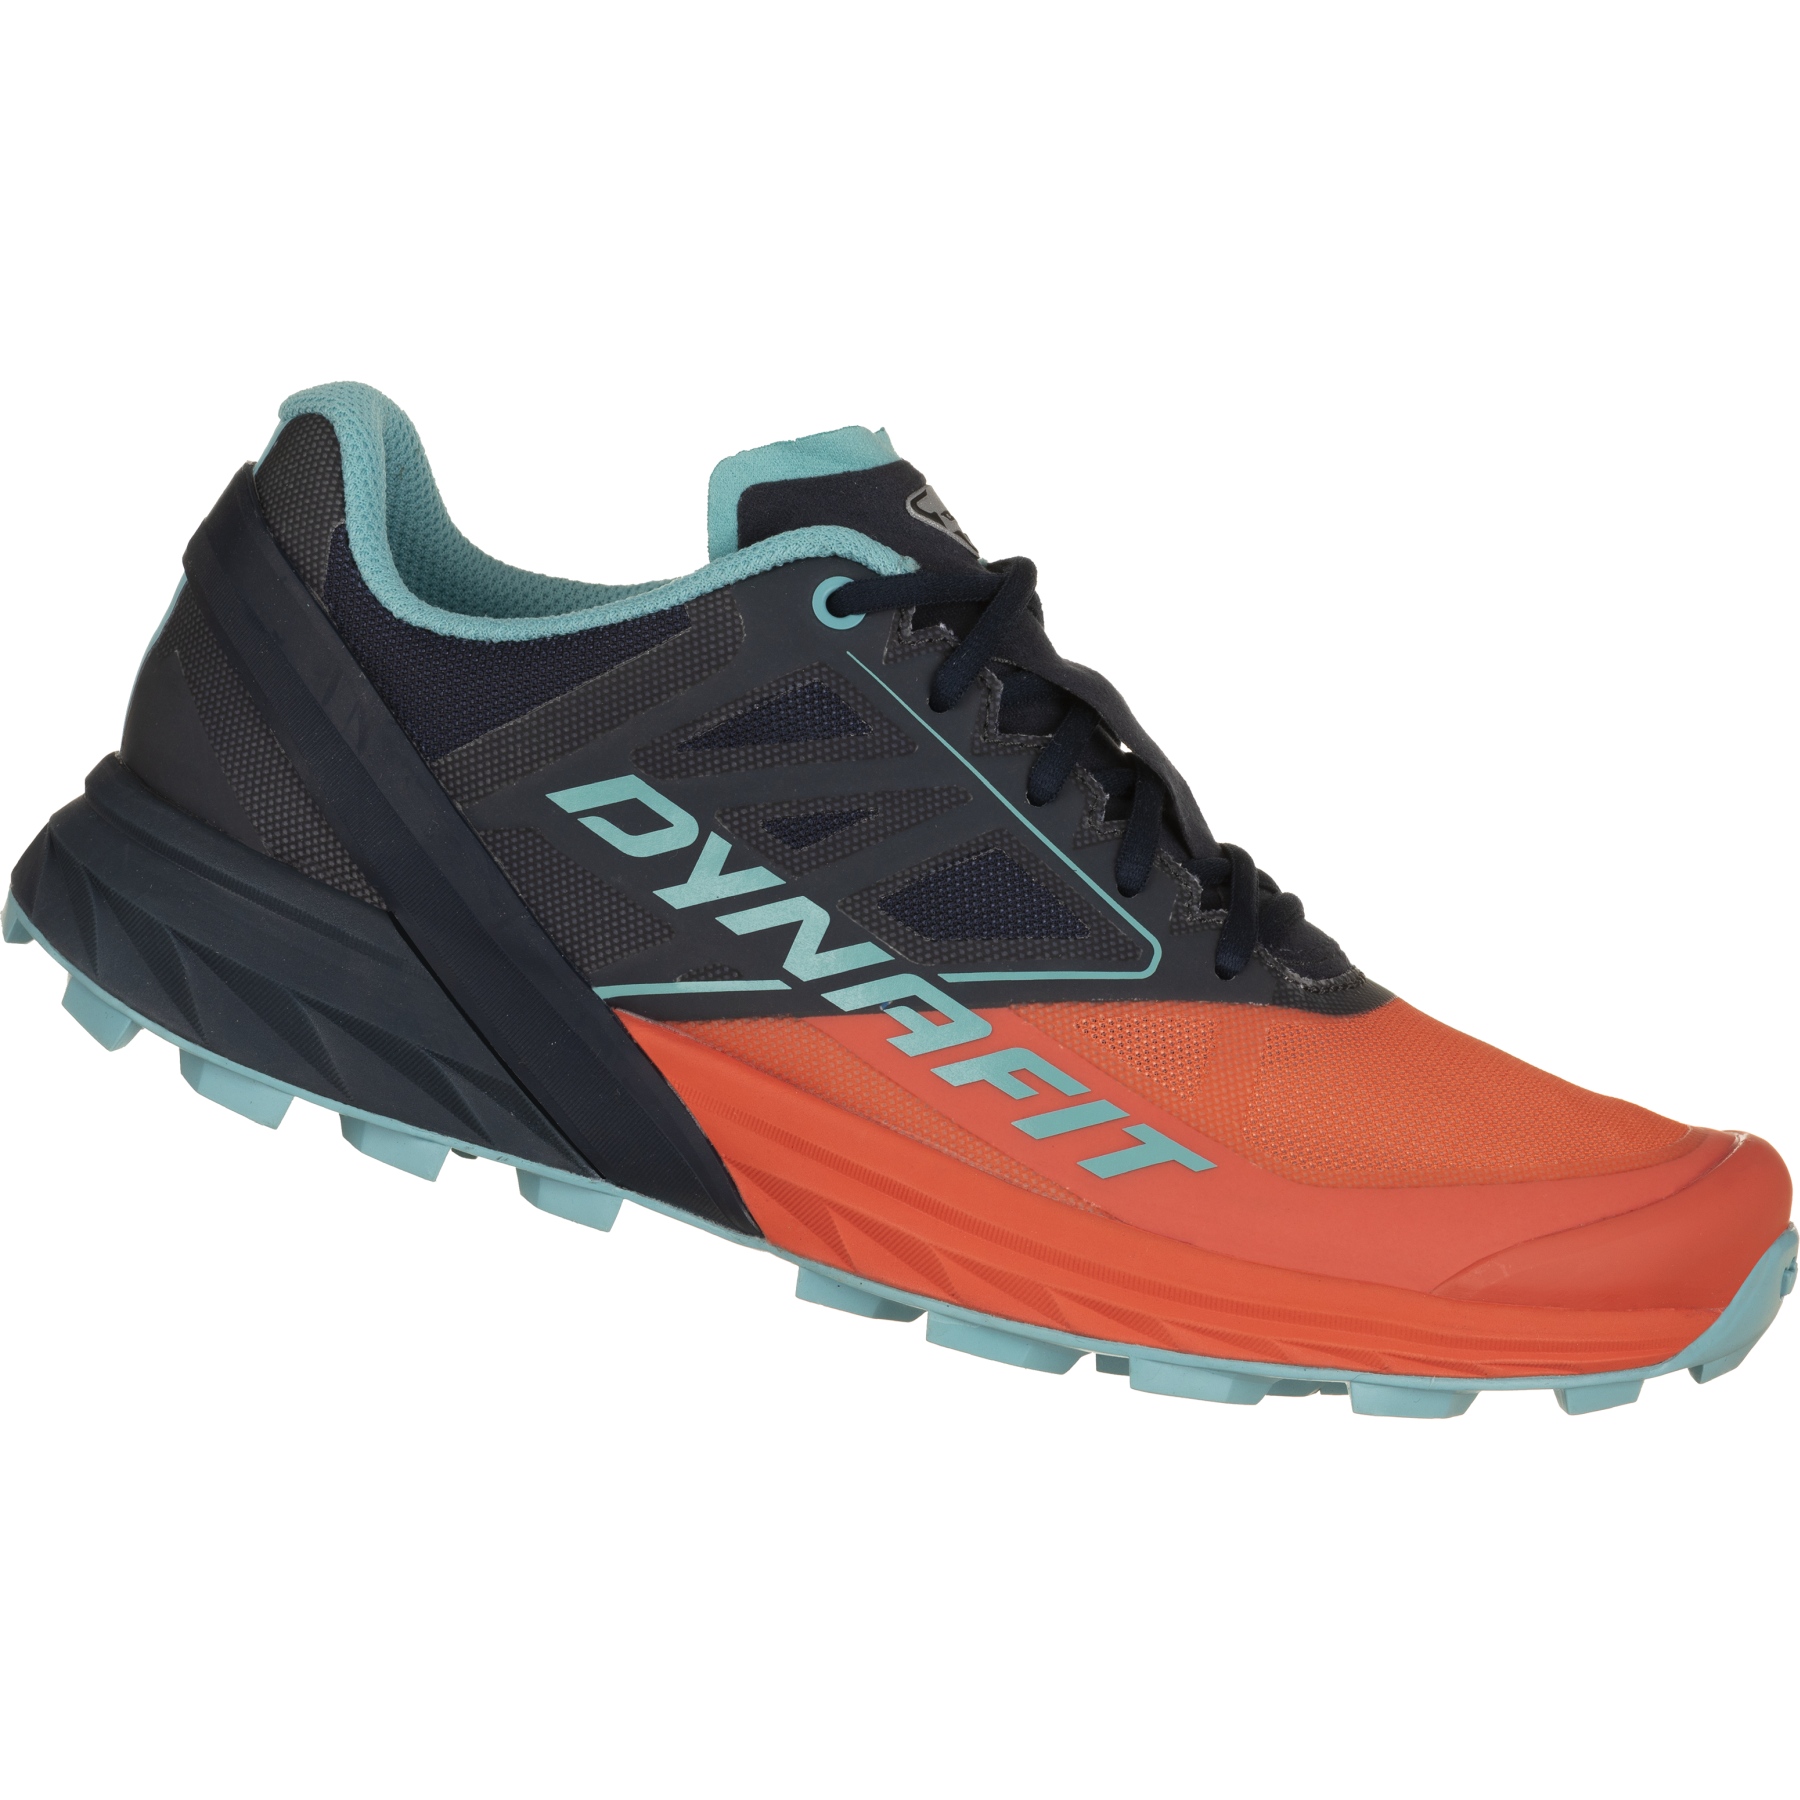 Produktbild von Dynafit Alpine Laufschuhe Damen - Hot Coral Blueberry